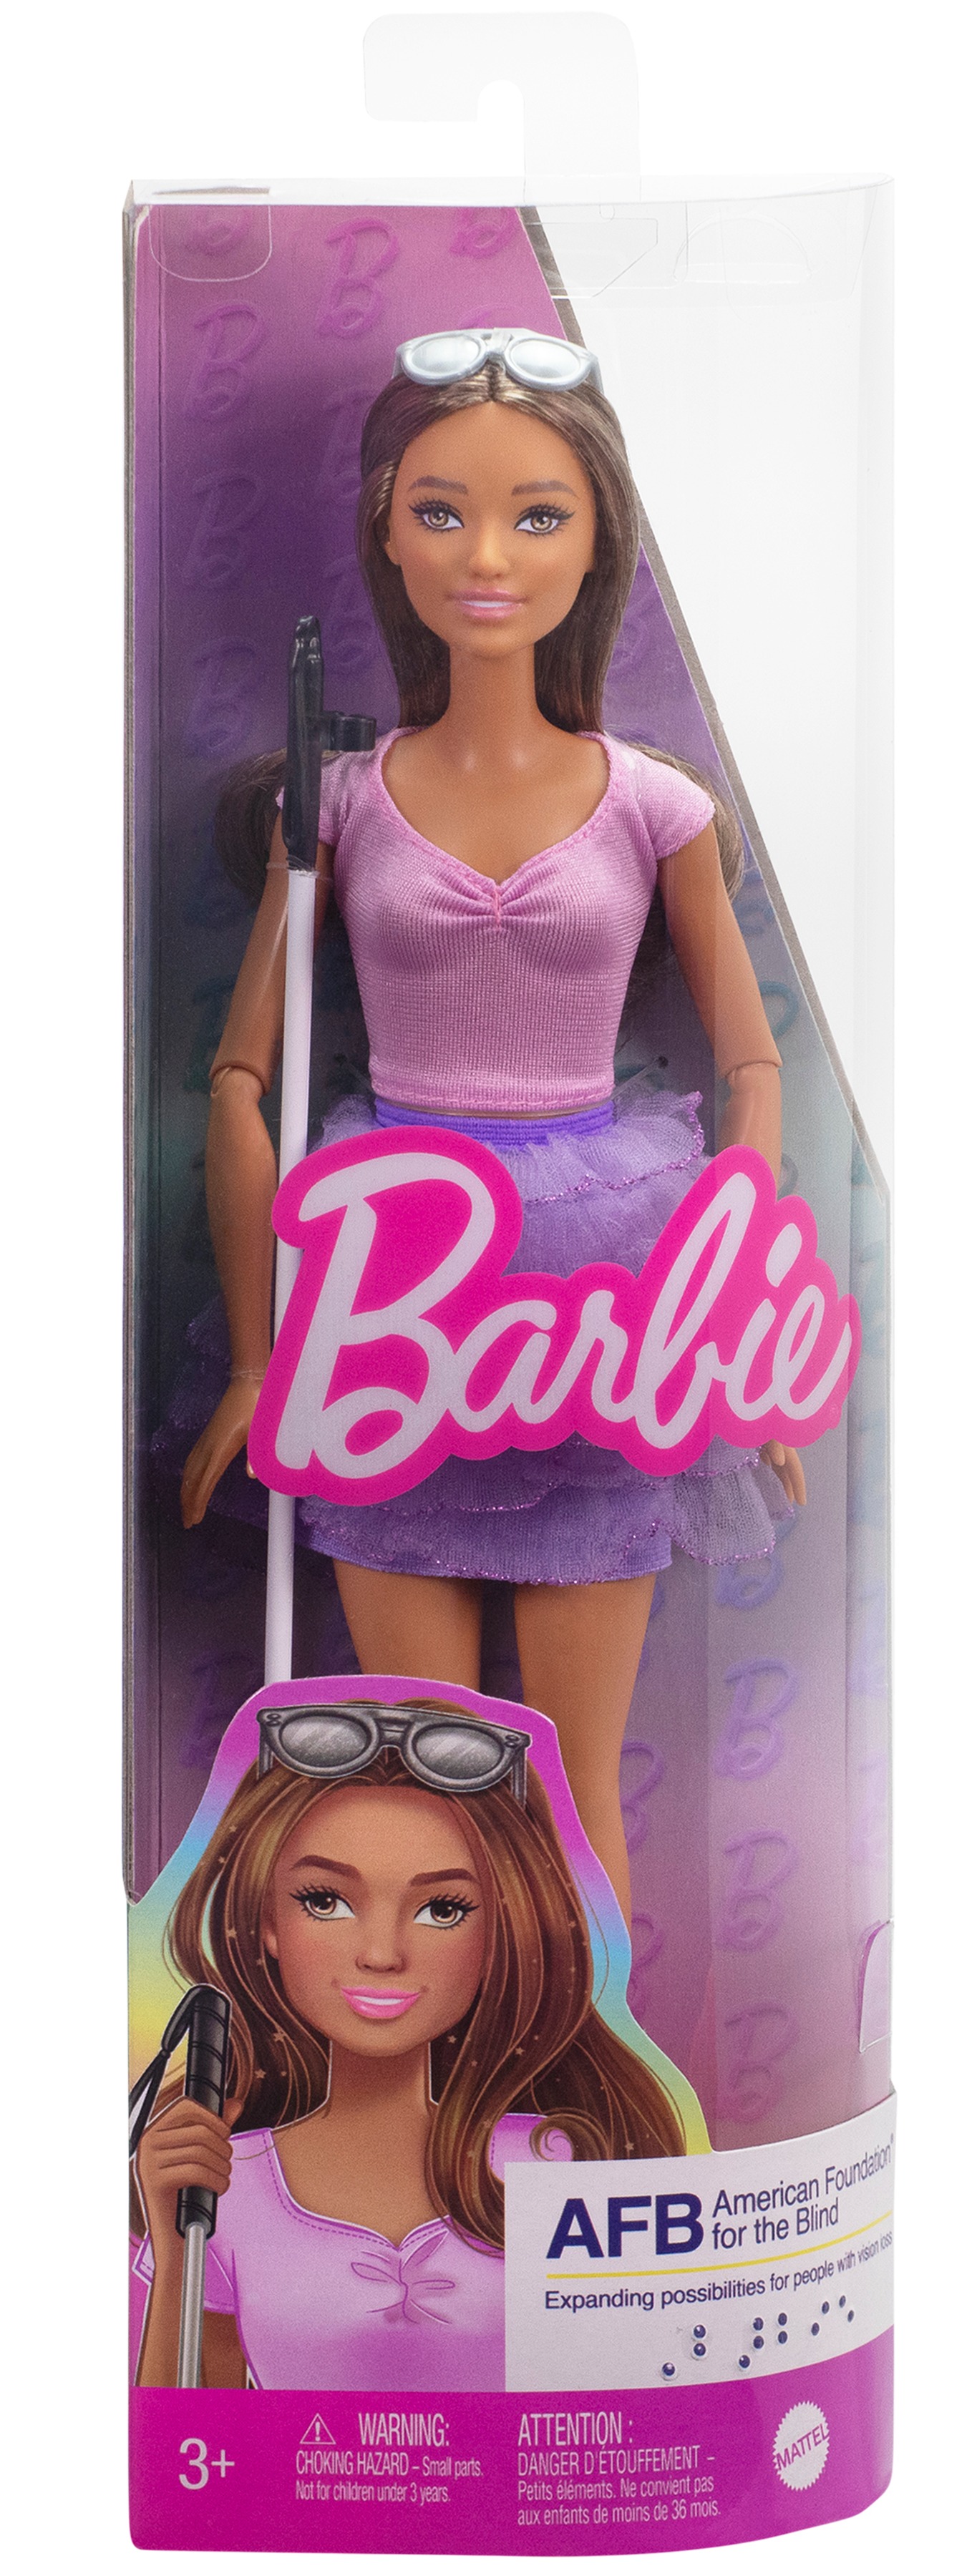 Lucy dijo: “Ver a la muñeca más conocida del mundo presentar a una Barbie ciega me hace sentir muy vista”